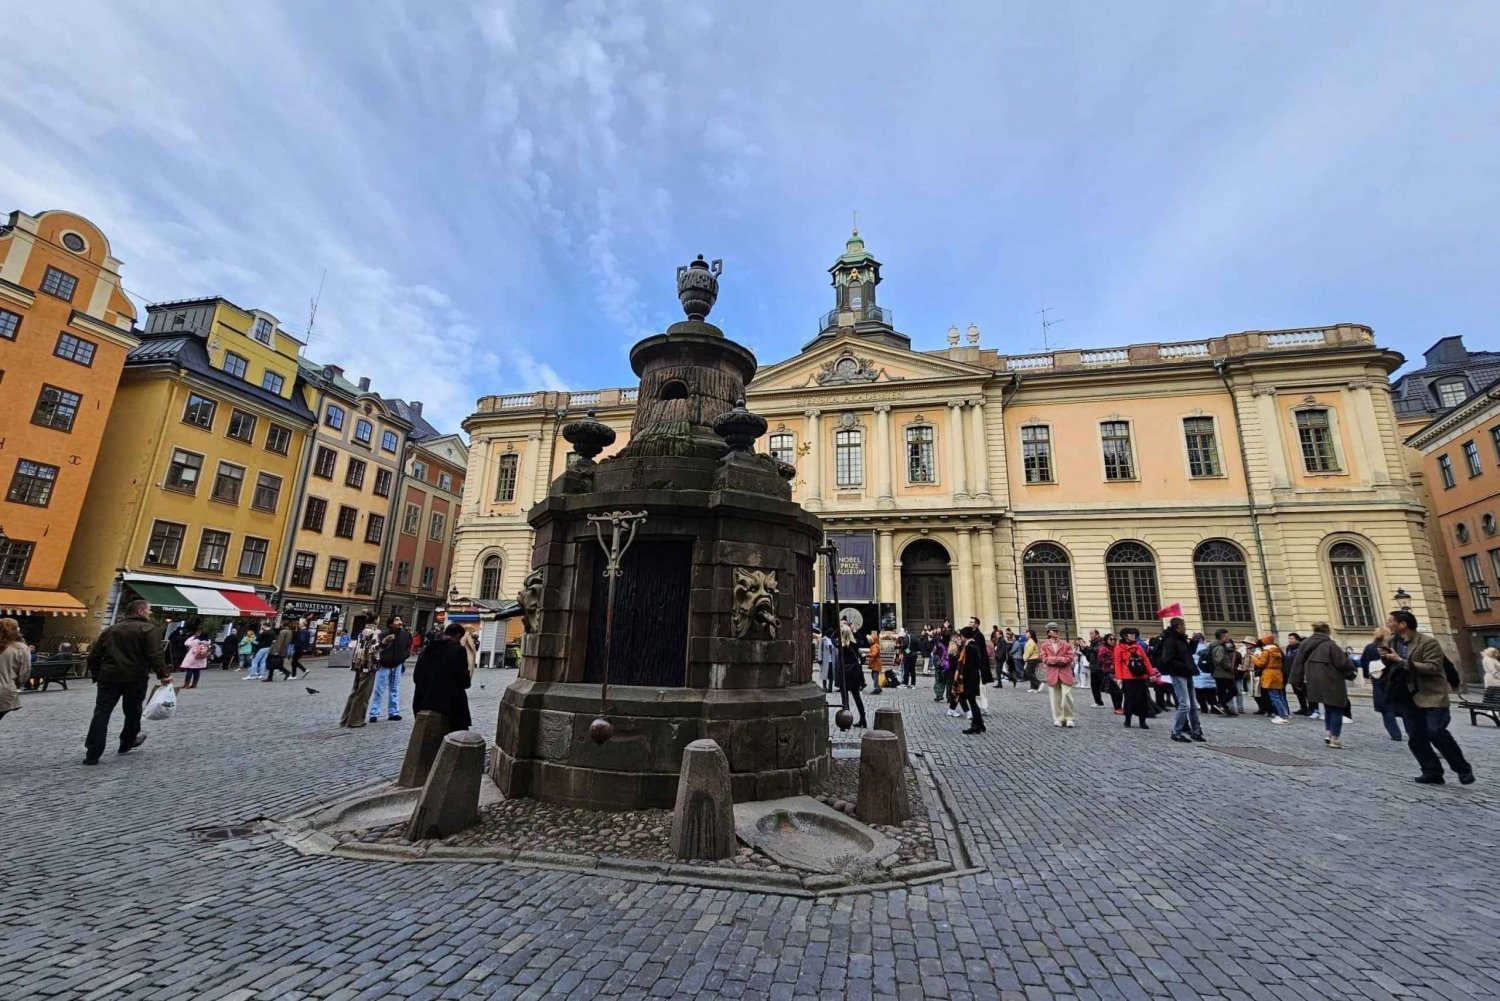 Stoccolma: I segreti di Gamla Stan e il tour a piedi della città vecchia